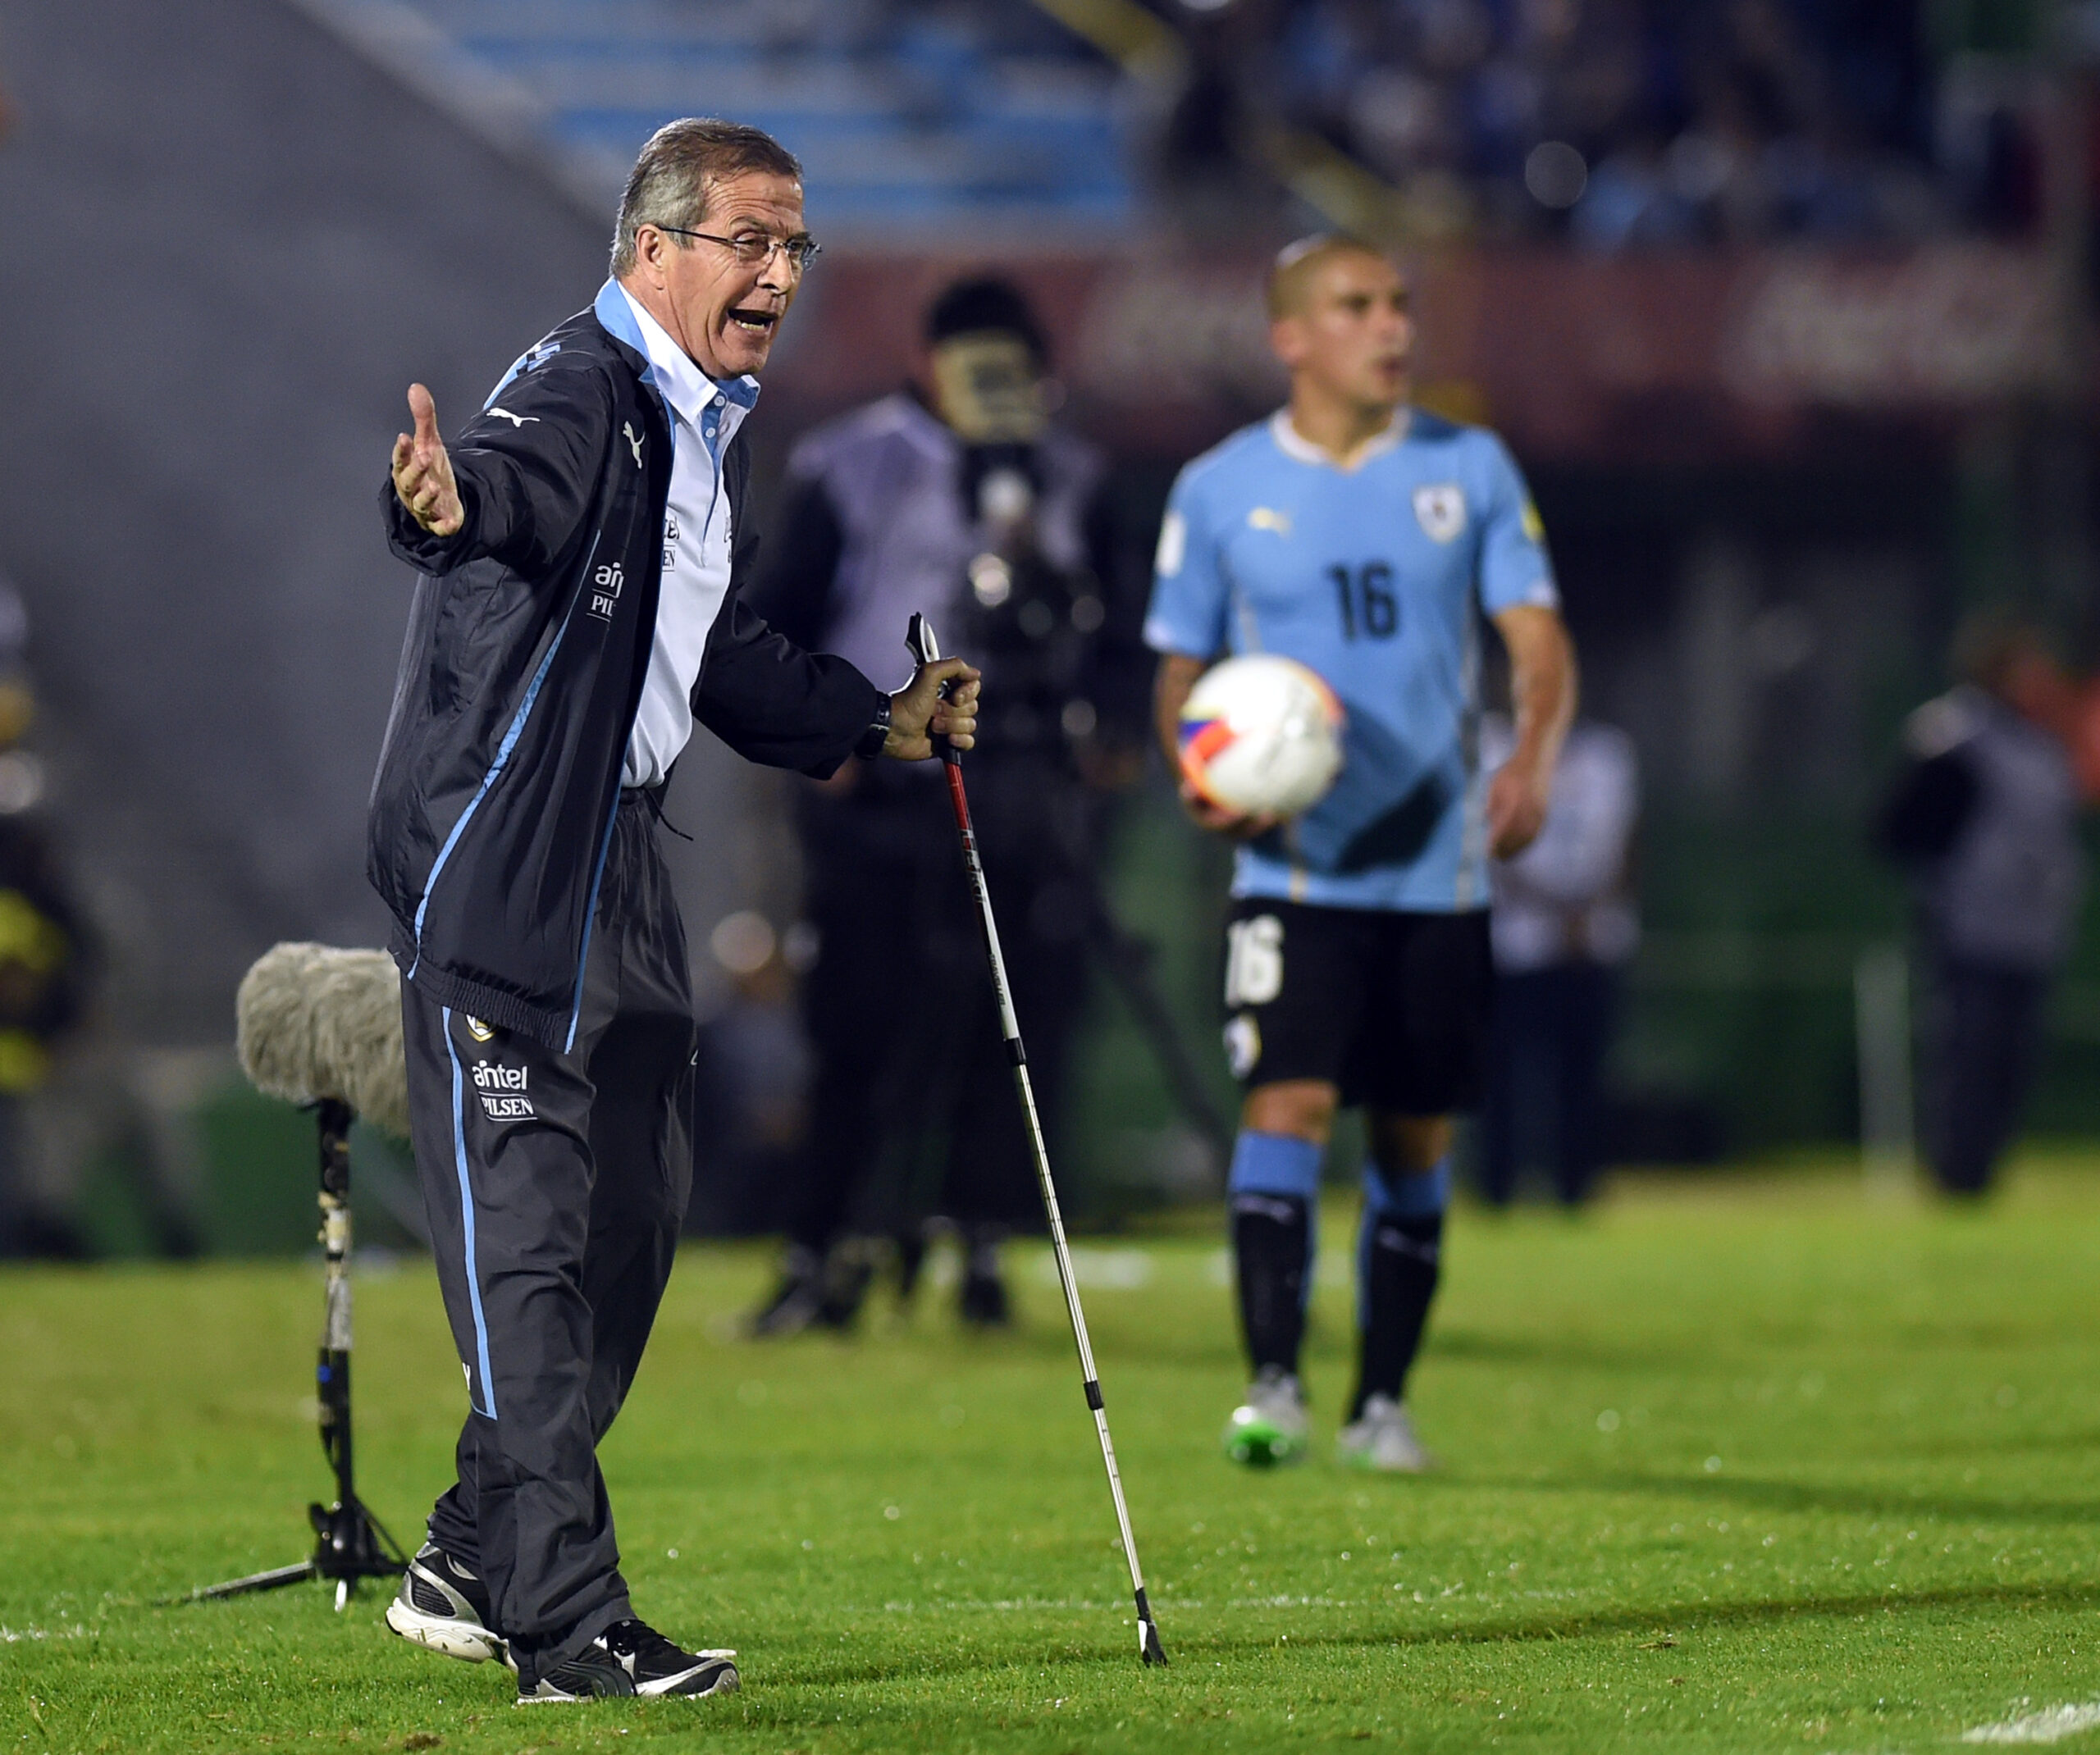 Capítulo 11: El equipo de fútbol masculino uruguayo a través de Óscar  Tabárez